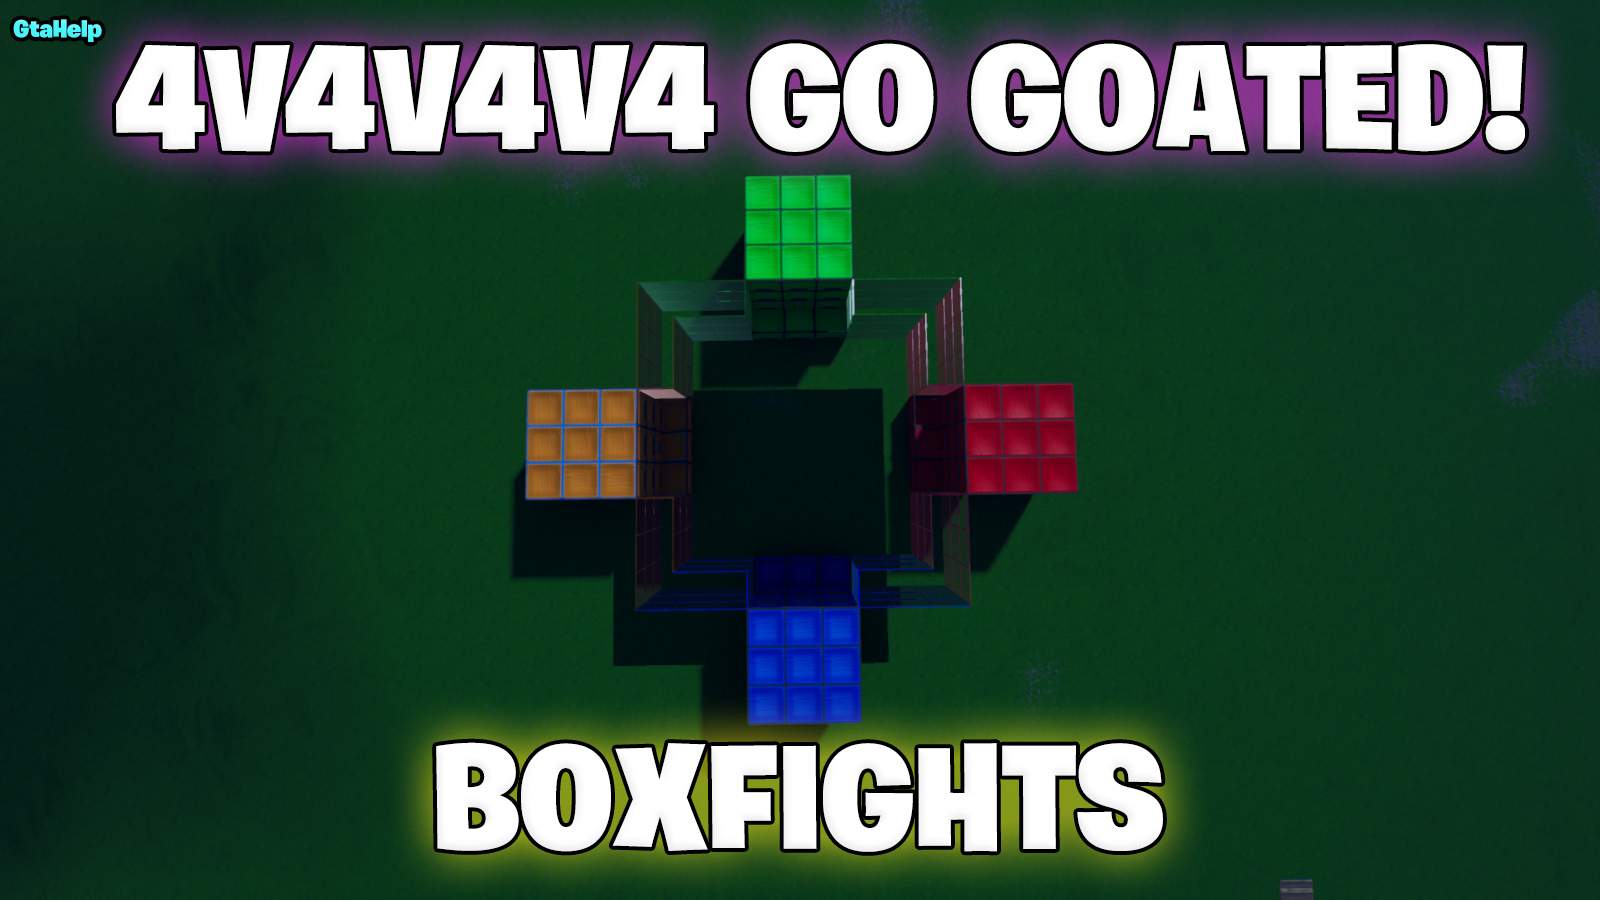 4V4V4V4 GO GOATED | BOXFIGHTS